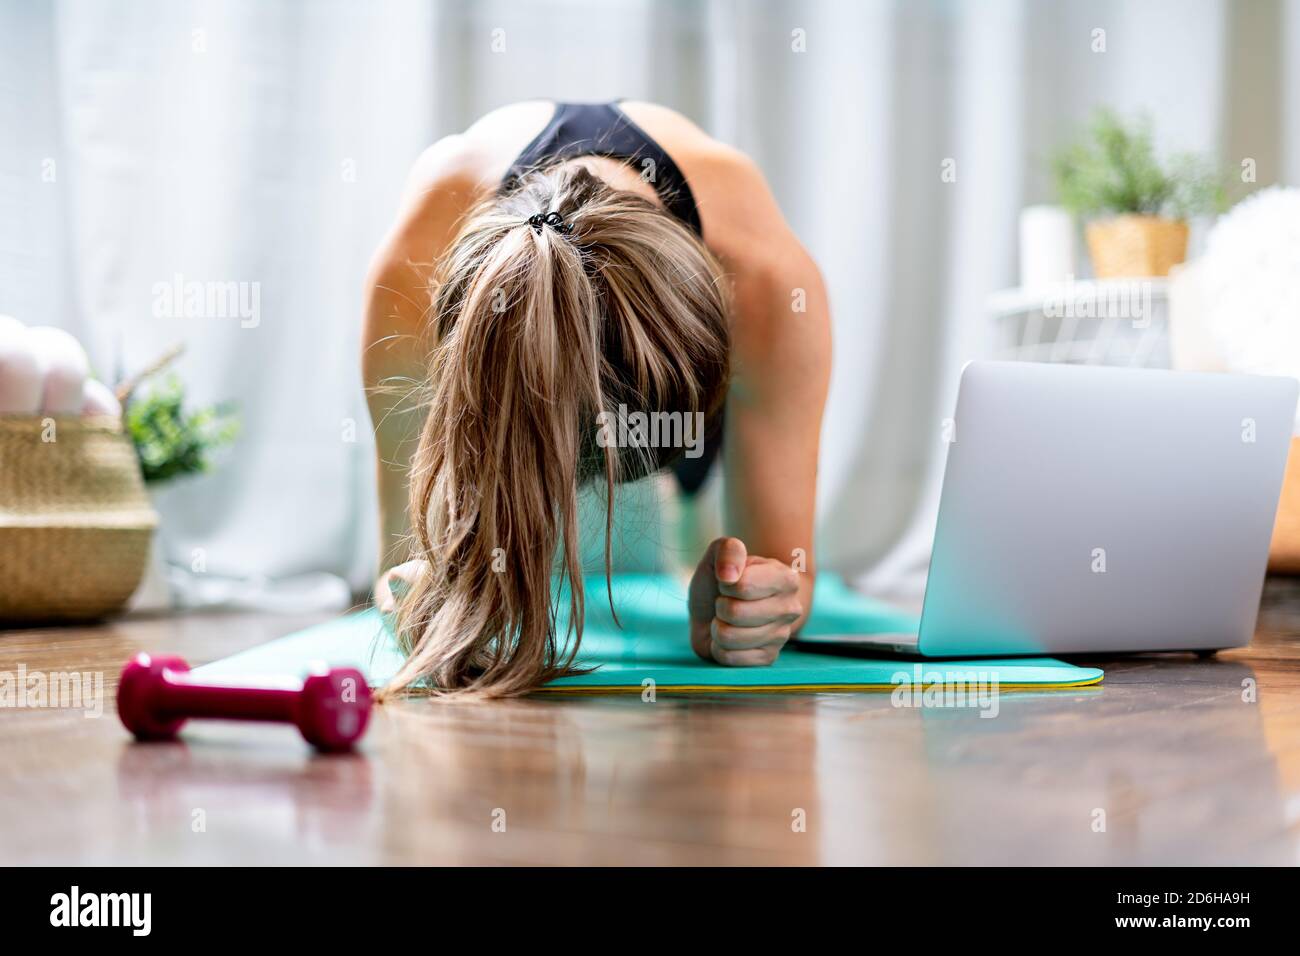 Giovane donna fitness che lavora fuori e usando il laptop e i manubri a casa in soggiorno, facendo yoga o pilates esercizio su tappeto turchese, in piedi in pl Foto Stock